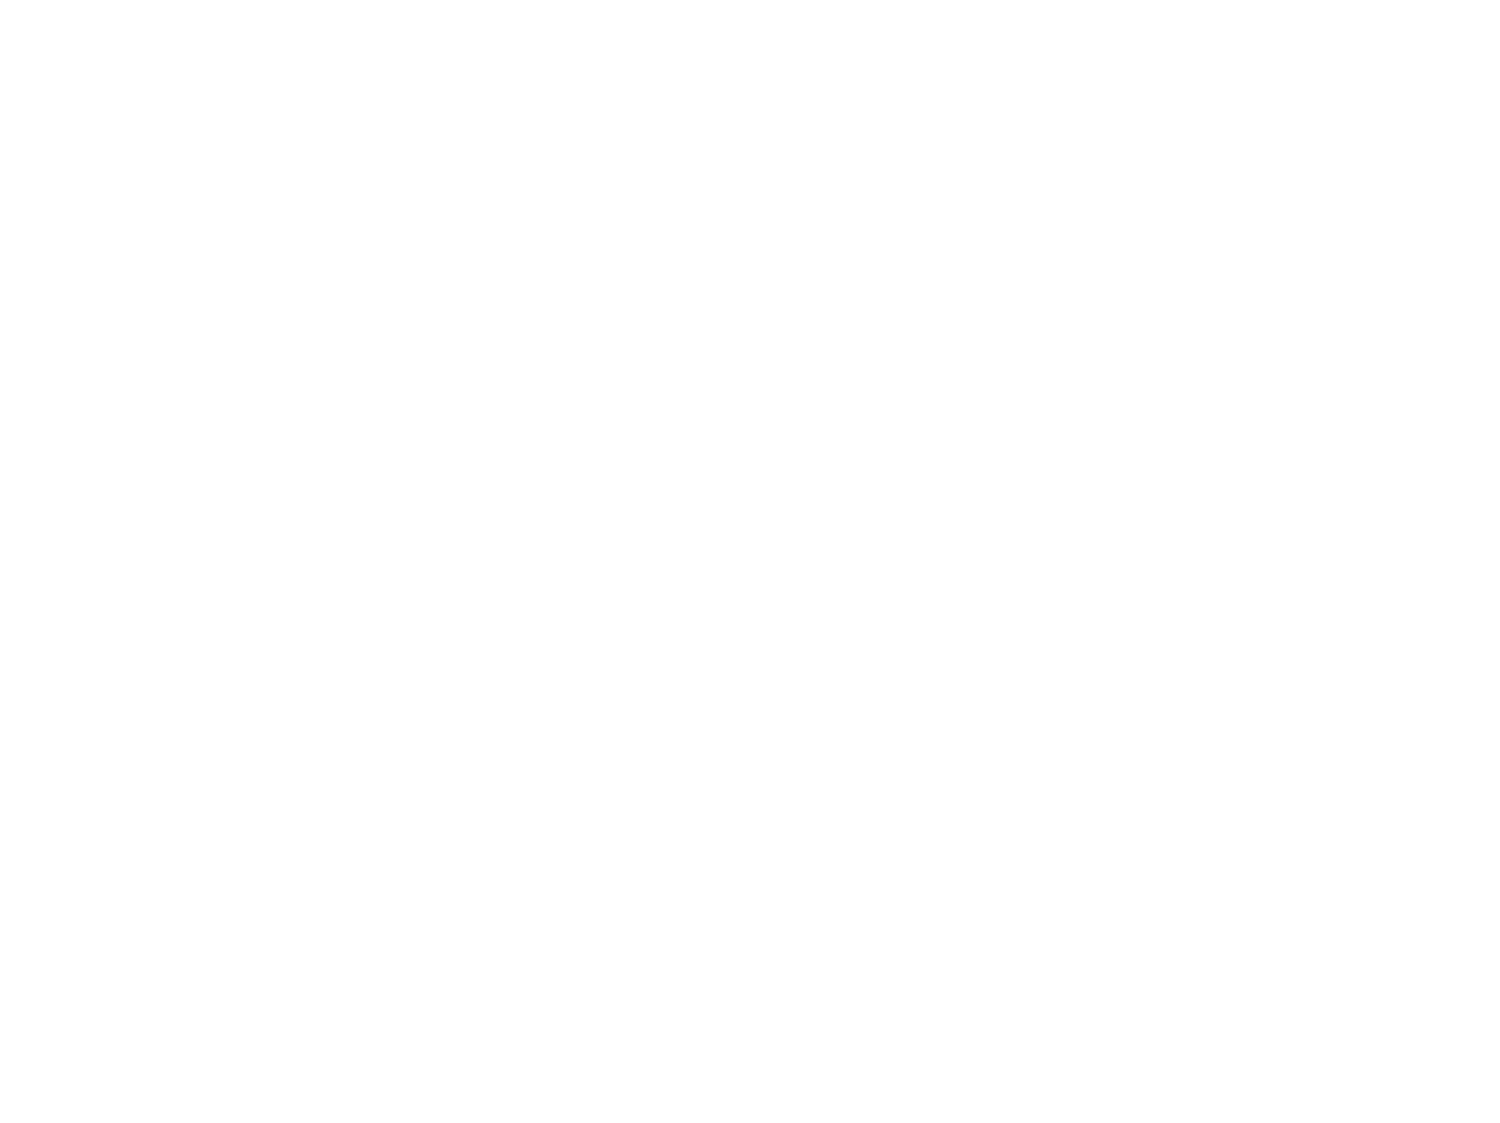 Brazil Farmers Market